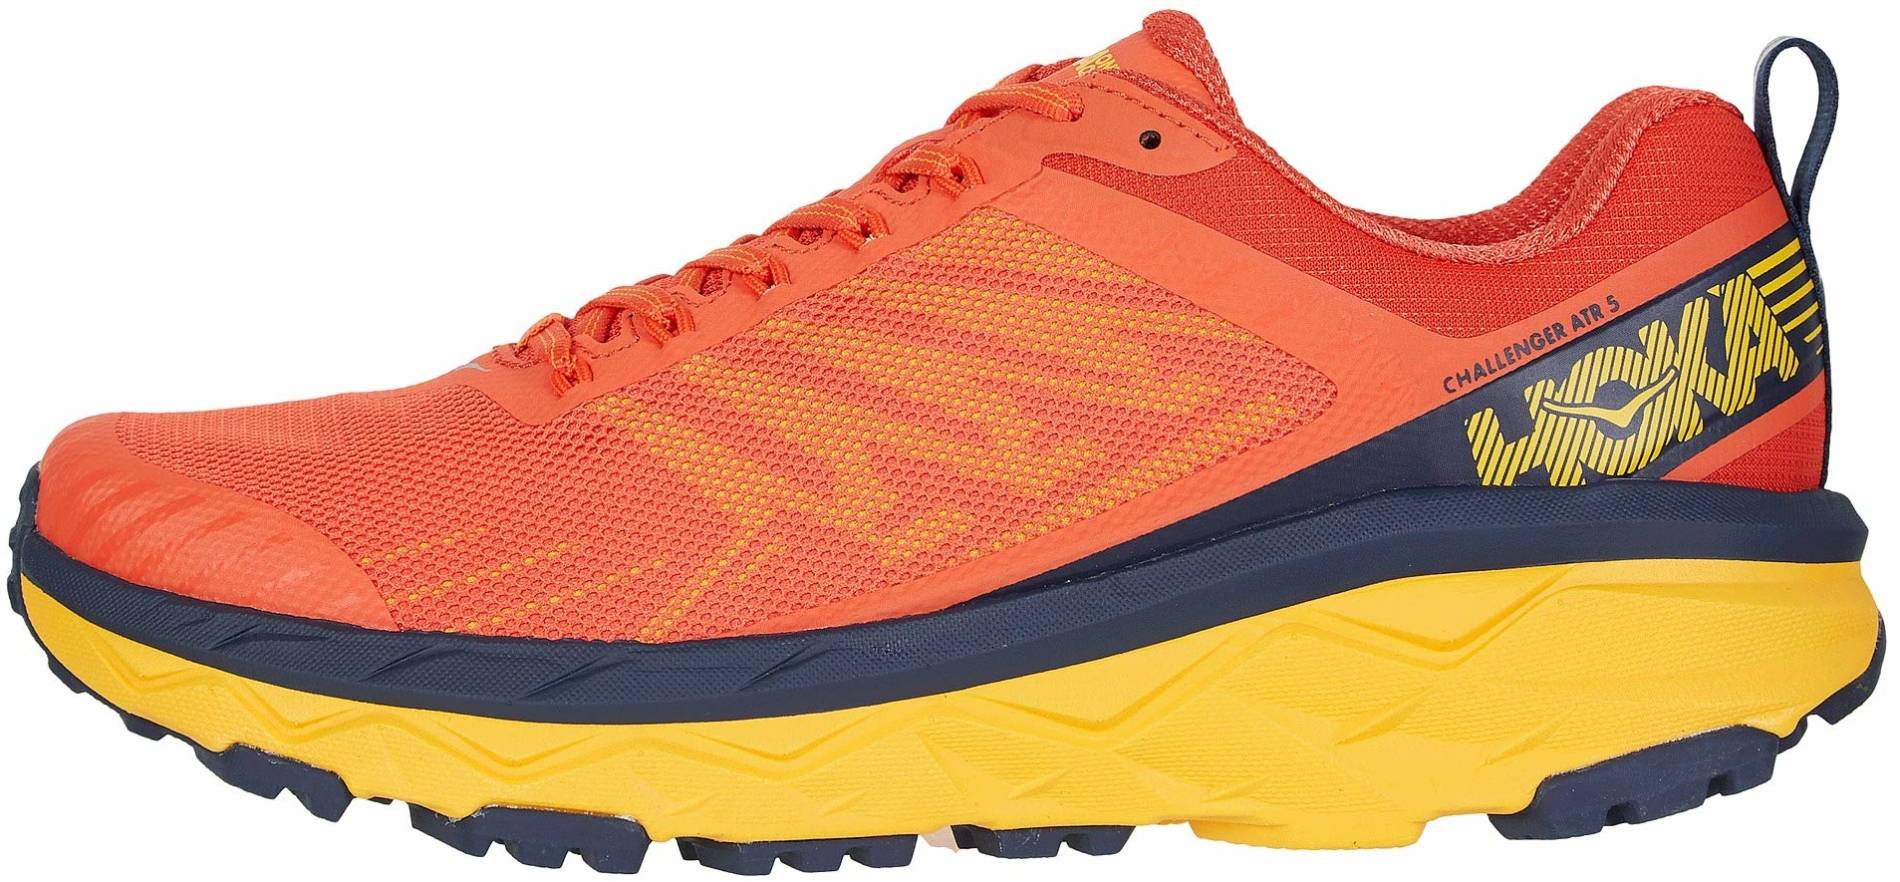 orange running sneakers